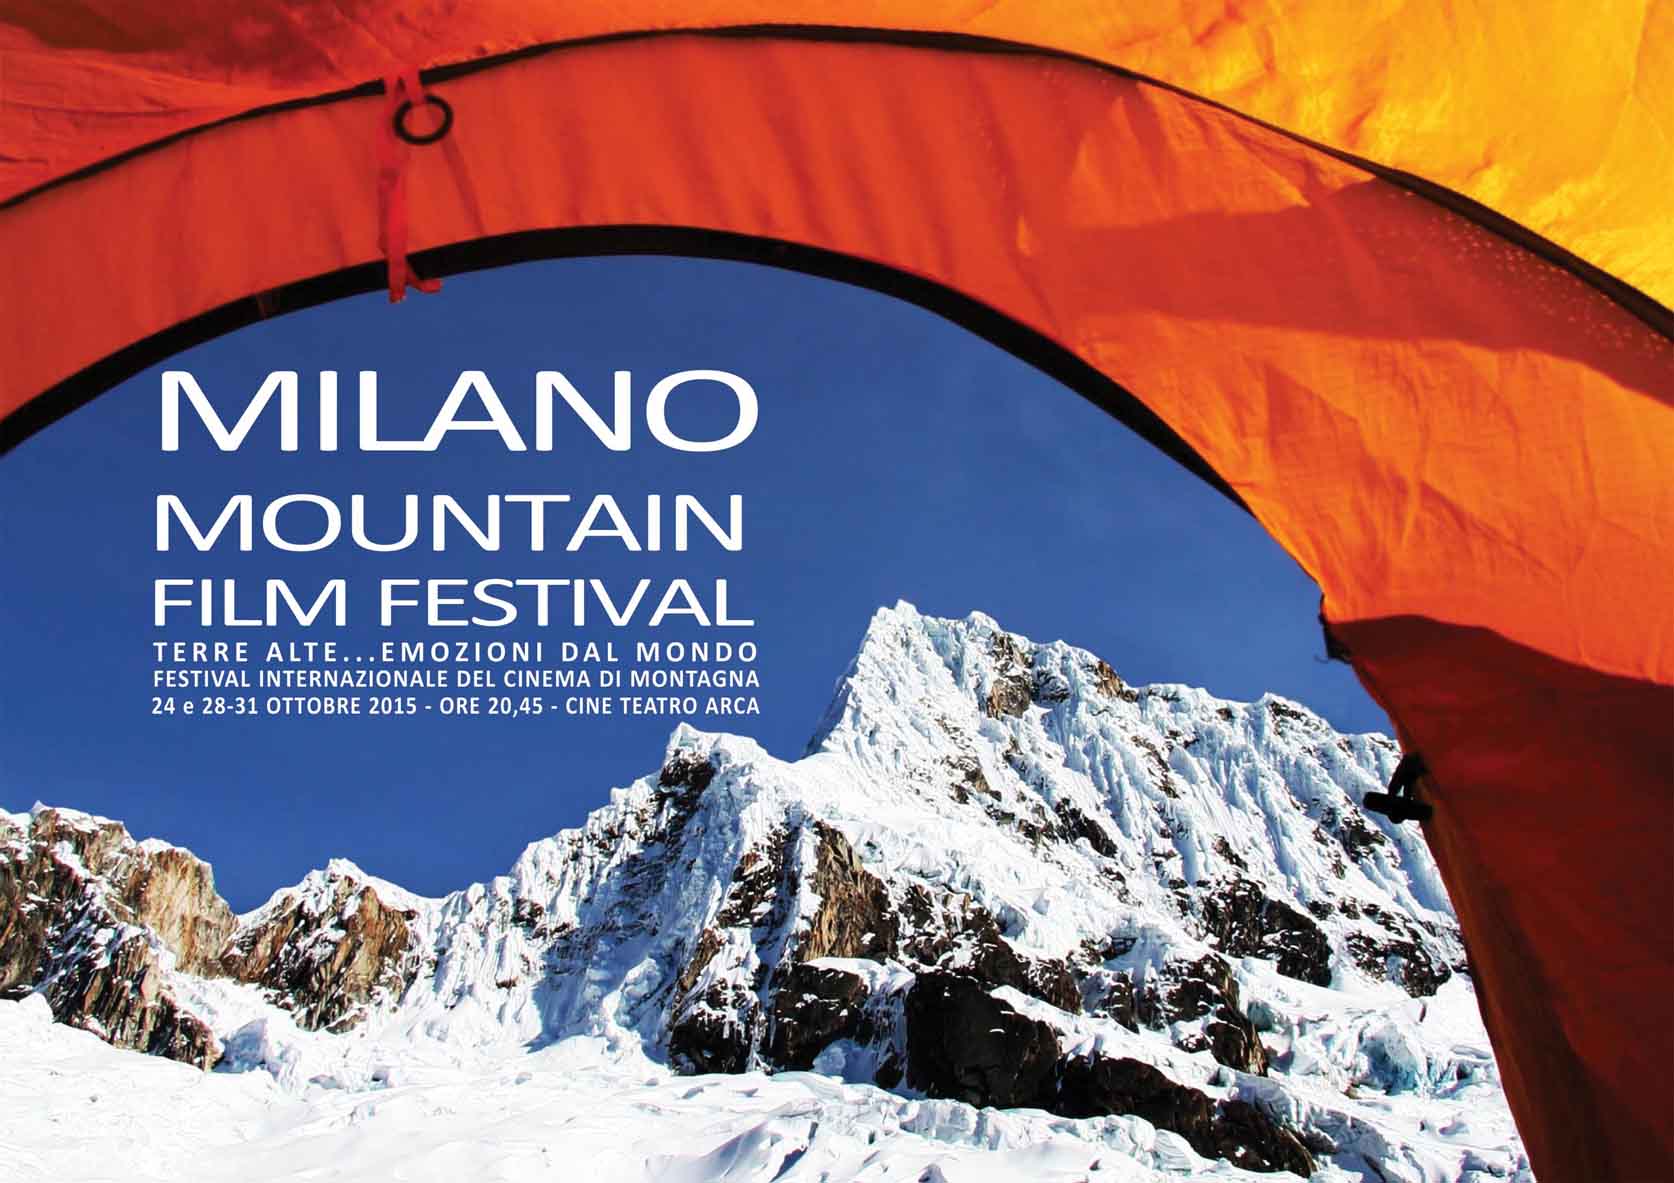 Milano mountain film festival